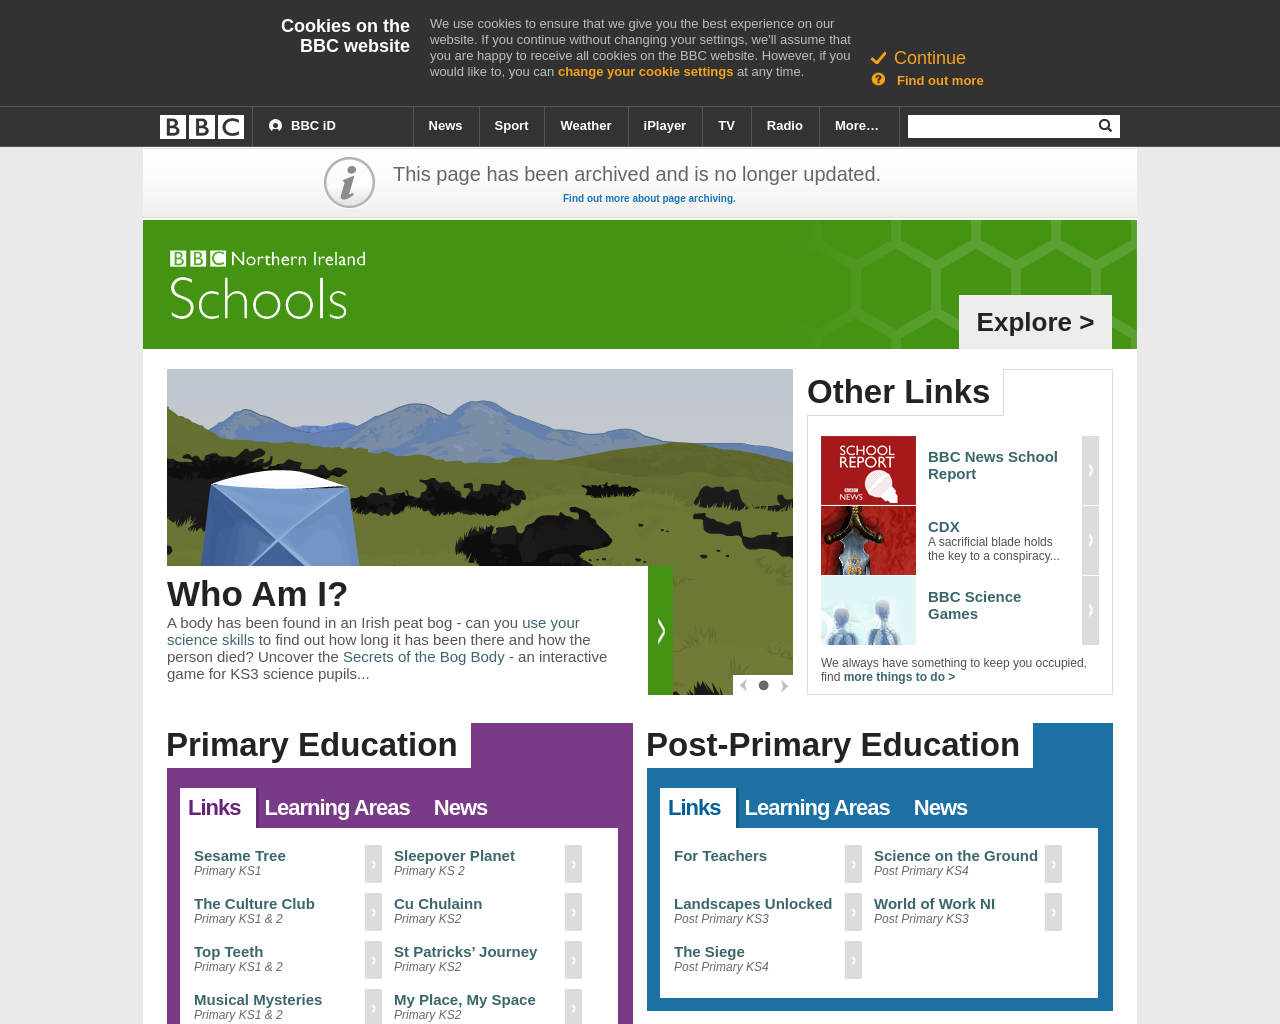 BBC NI Schools Page